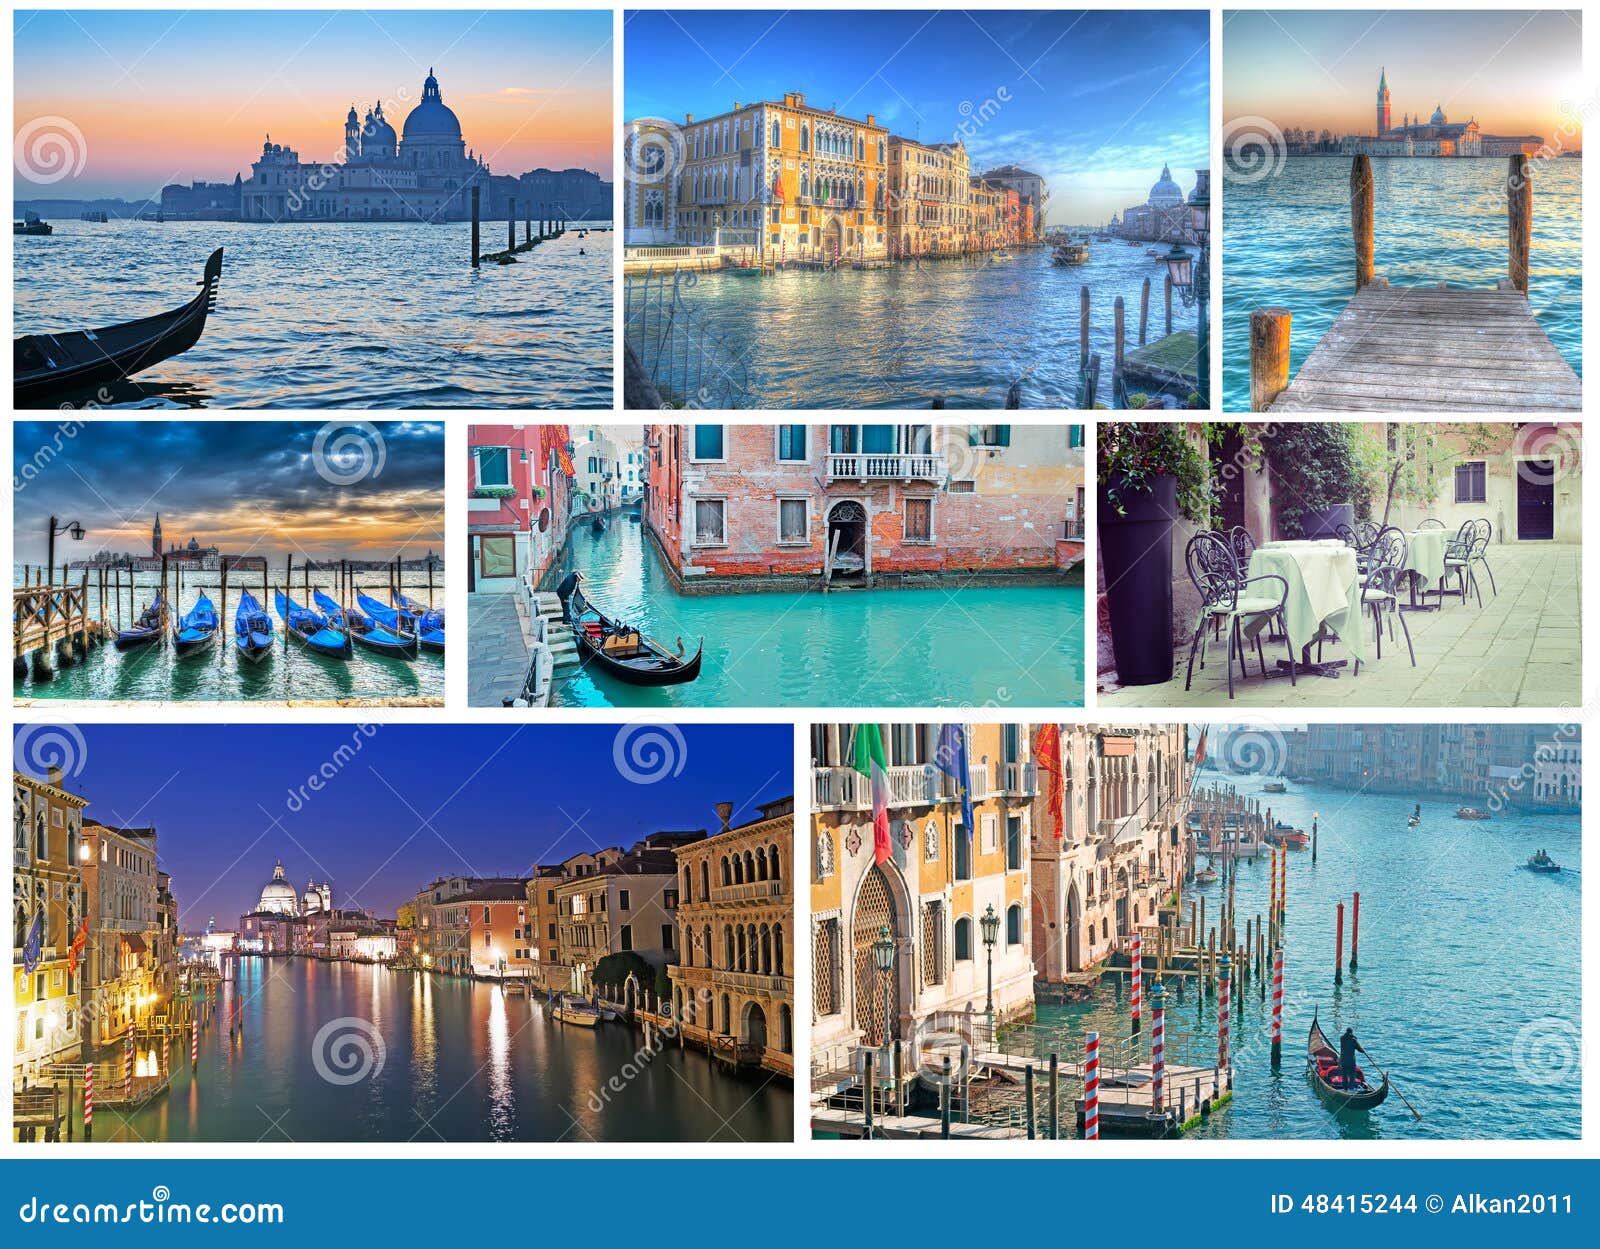 Collage Van Foto's Van Venetië Stock Foto Image of kathedraal, blauw: 48415244